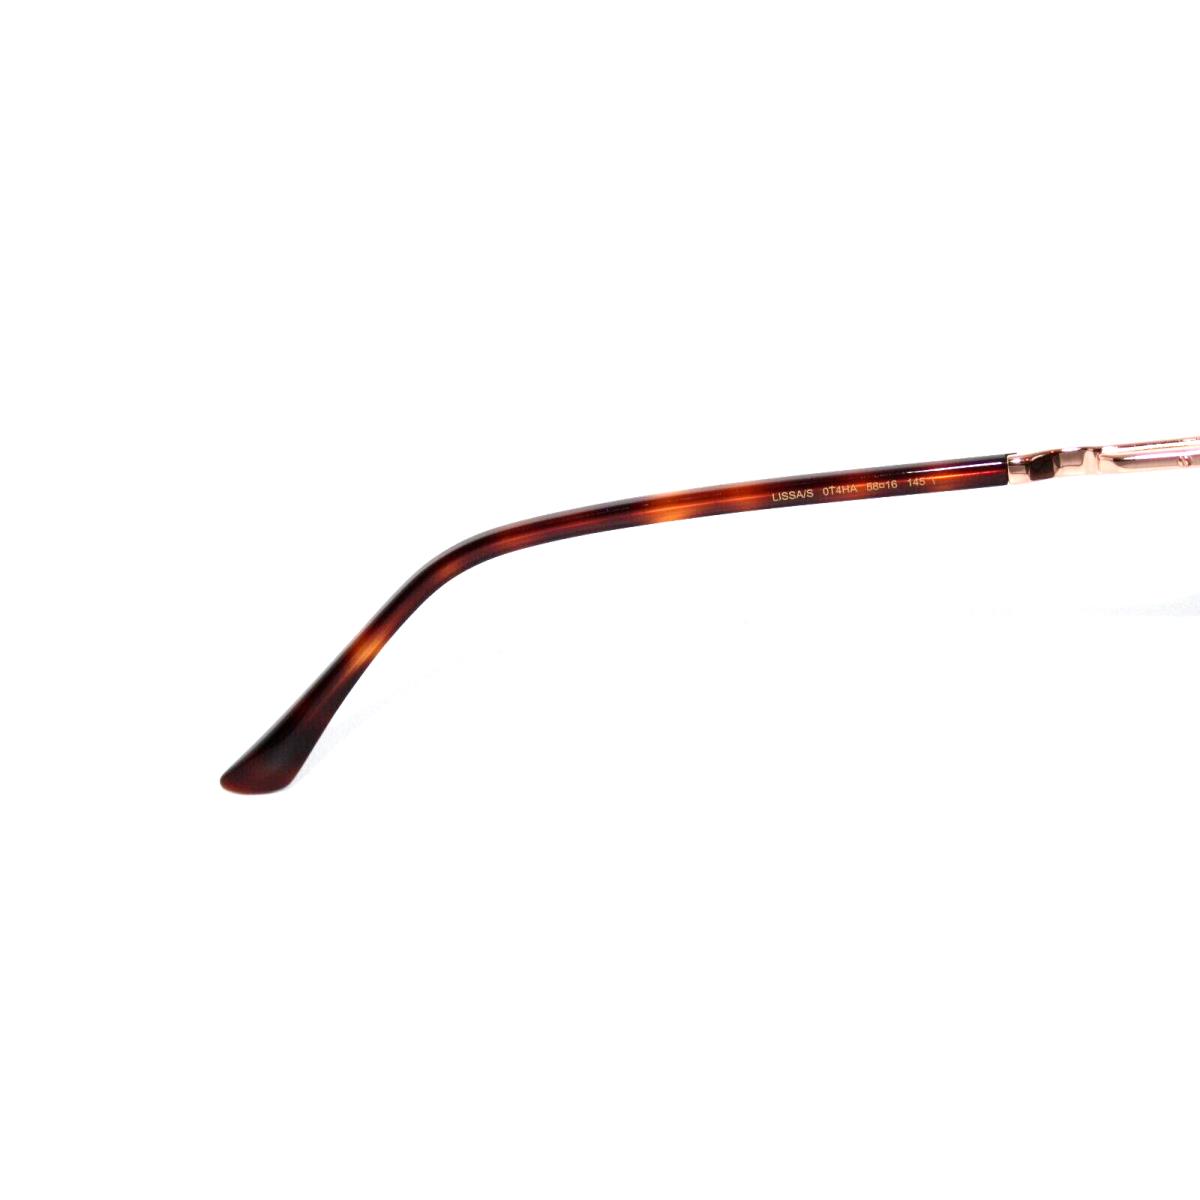 Jimmy Choo sunglasses  - Tortoise Frame, Brown Lens